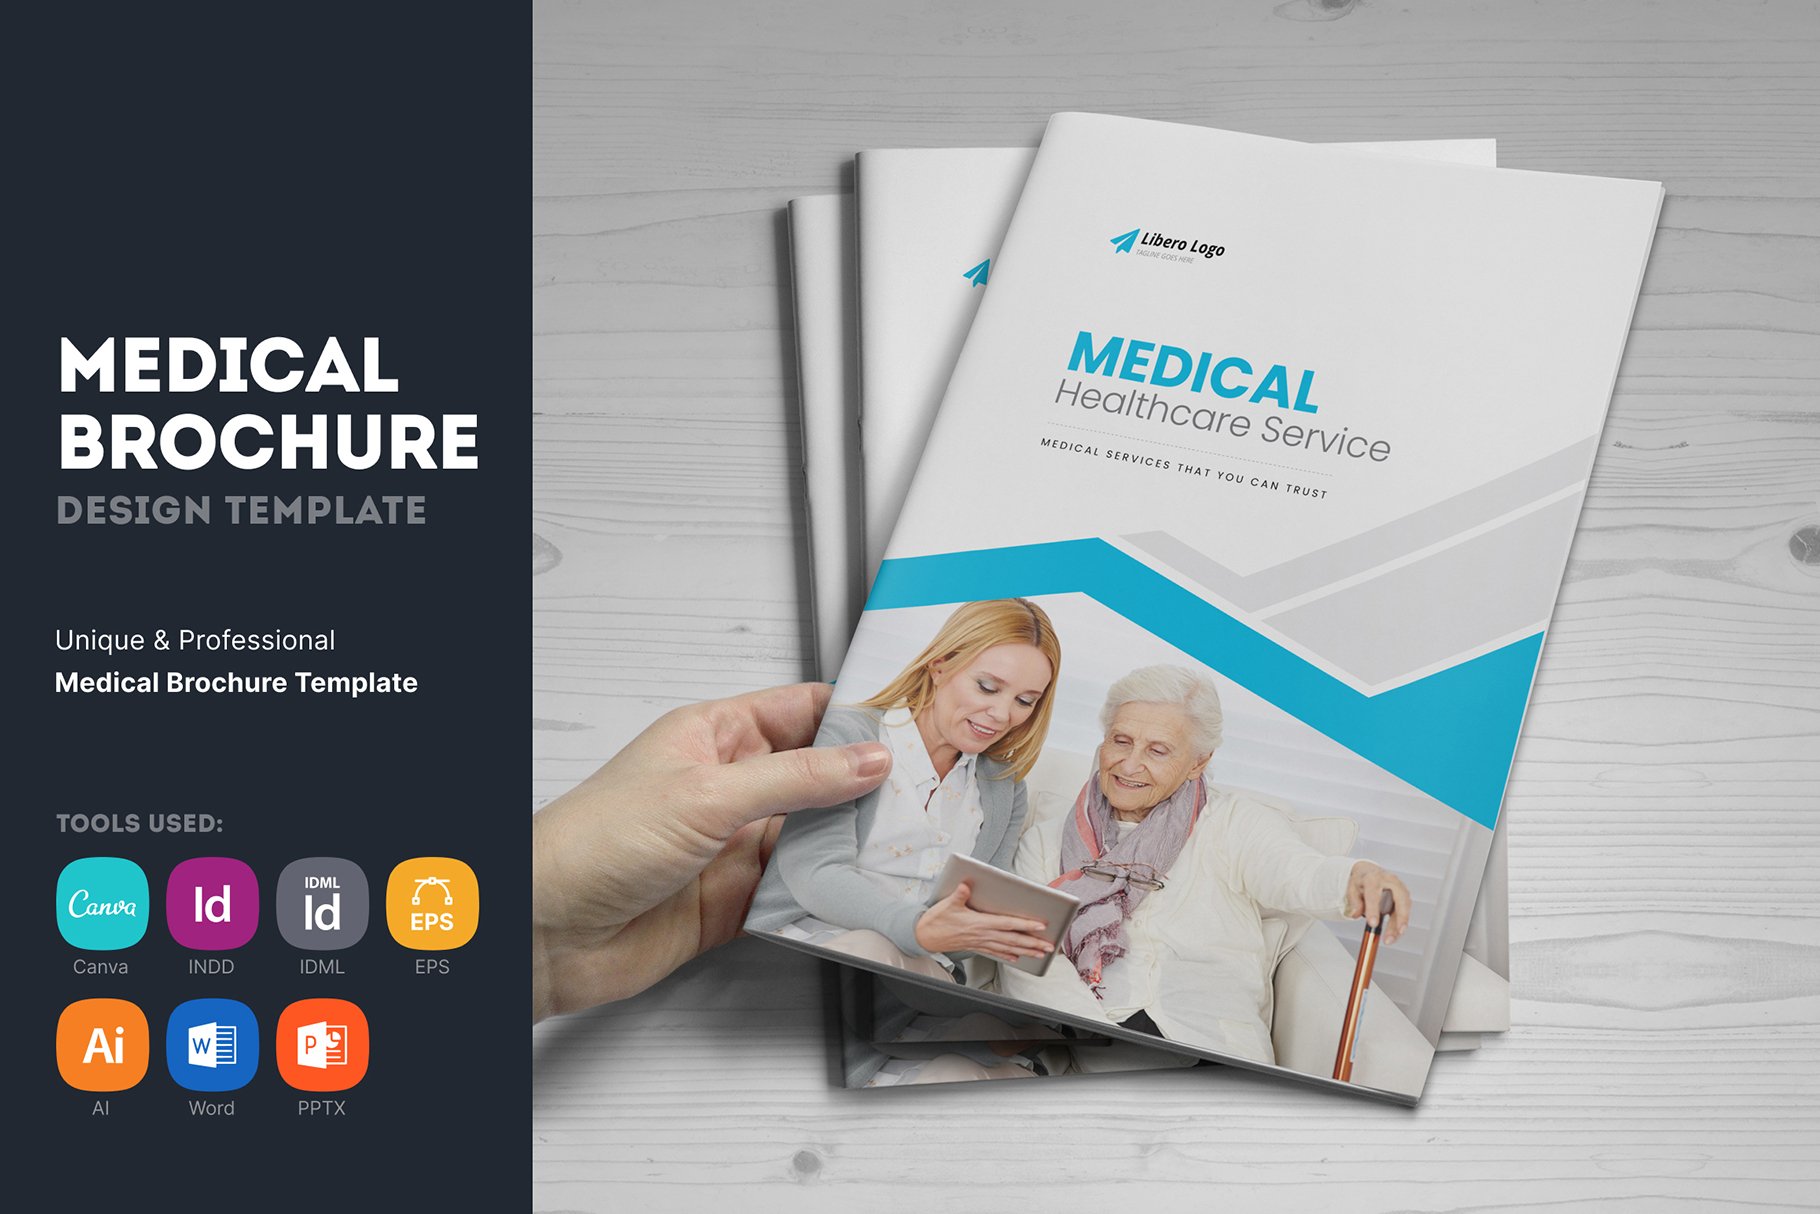 Medical HealthCare Brochure v6 cover image.